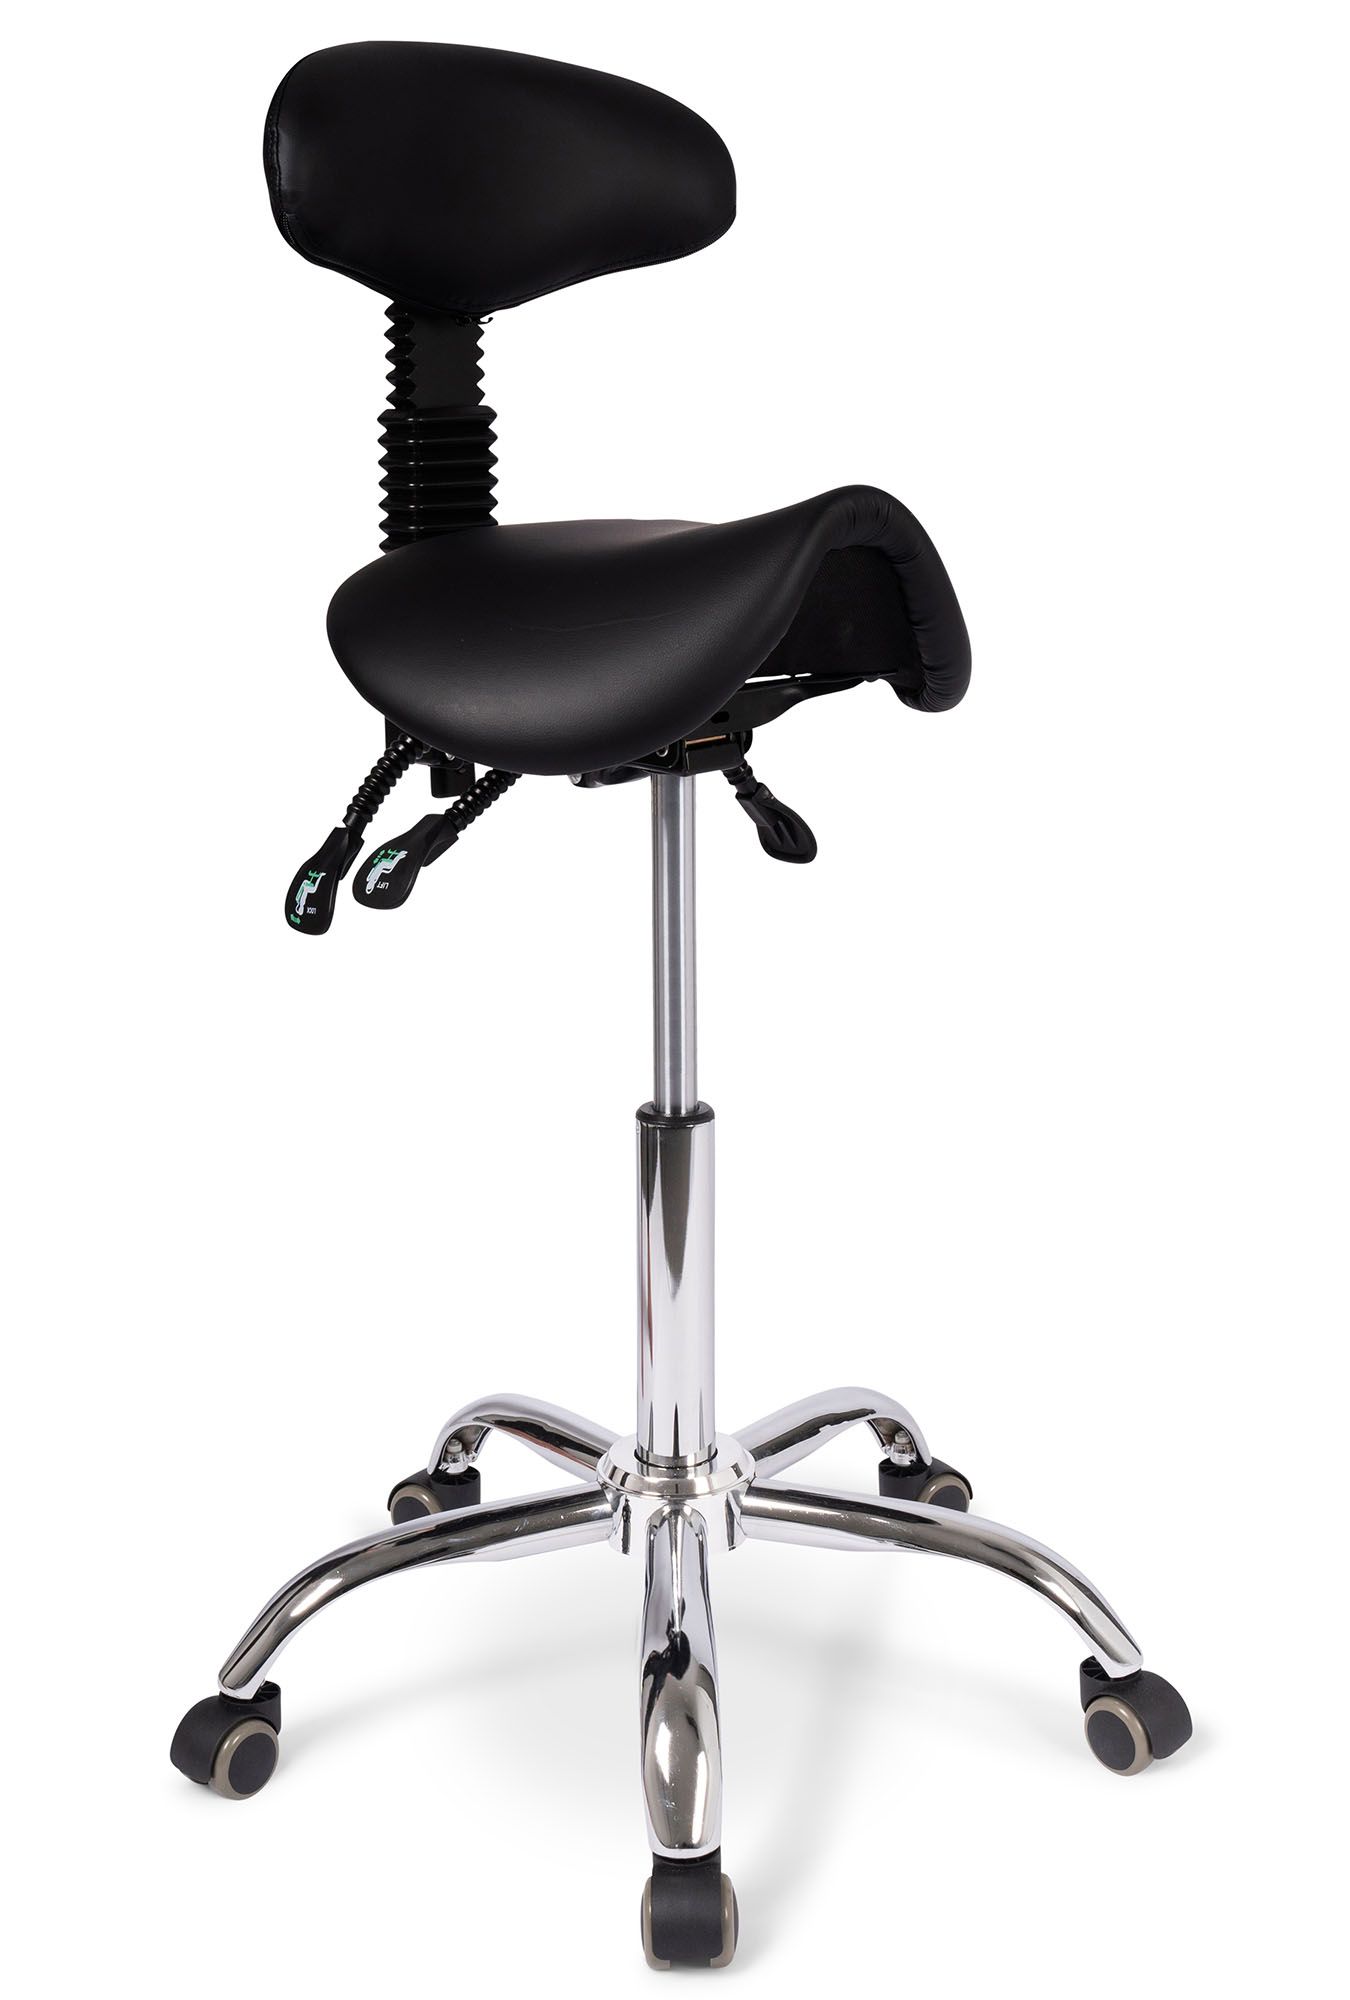 dunimed ergonomic saddle stool with backrest high version for sale